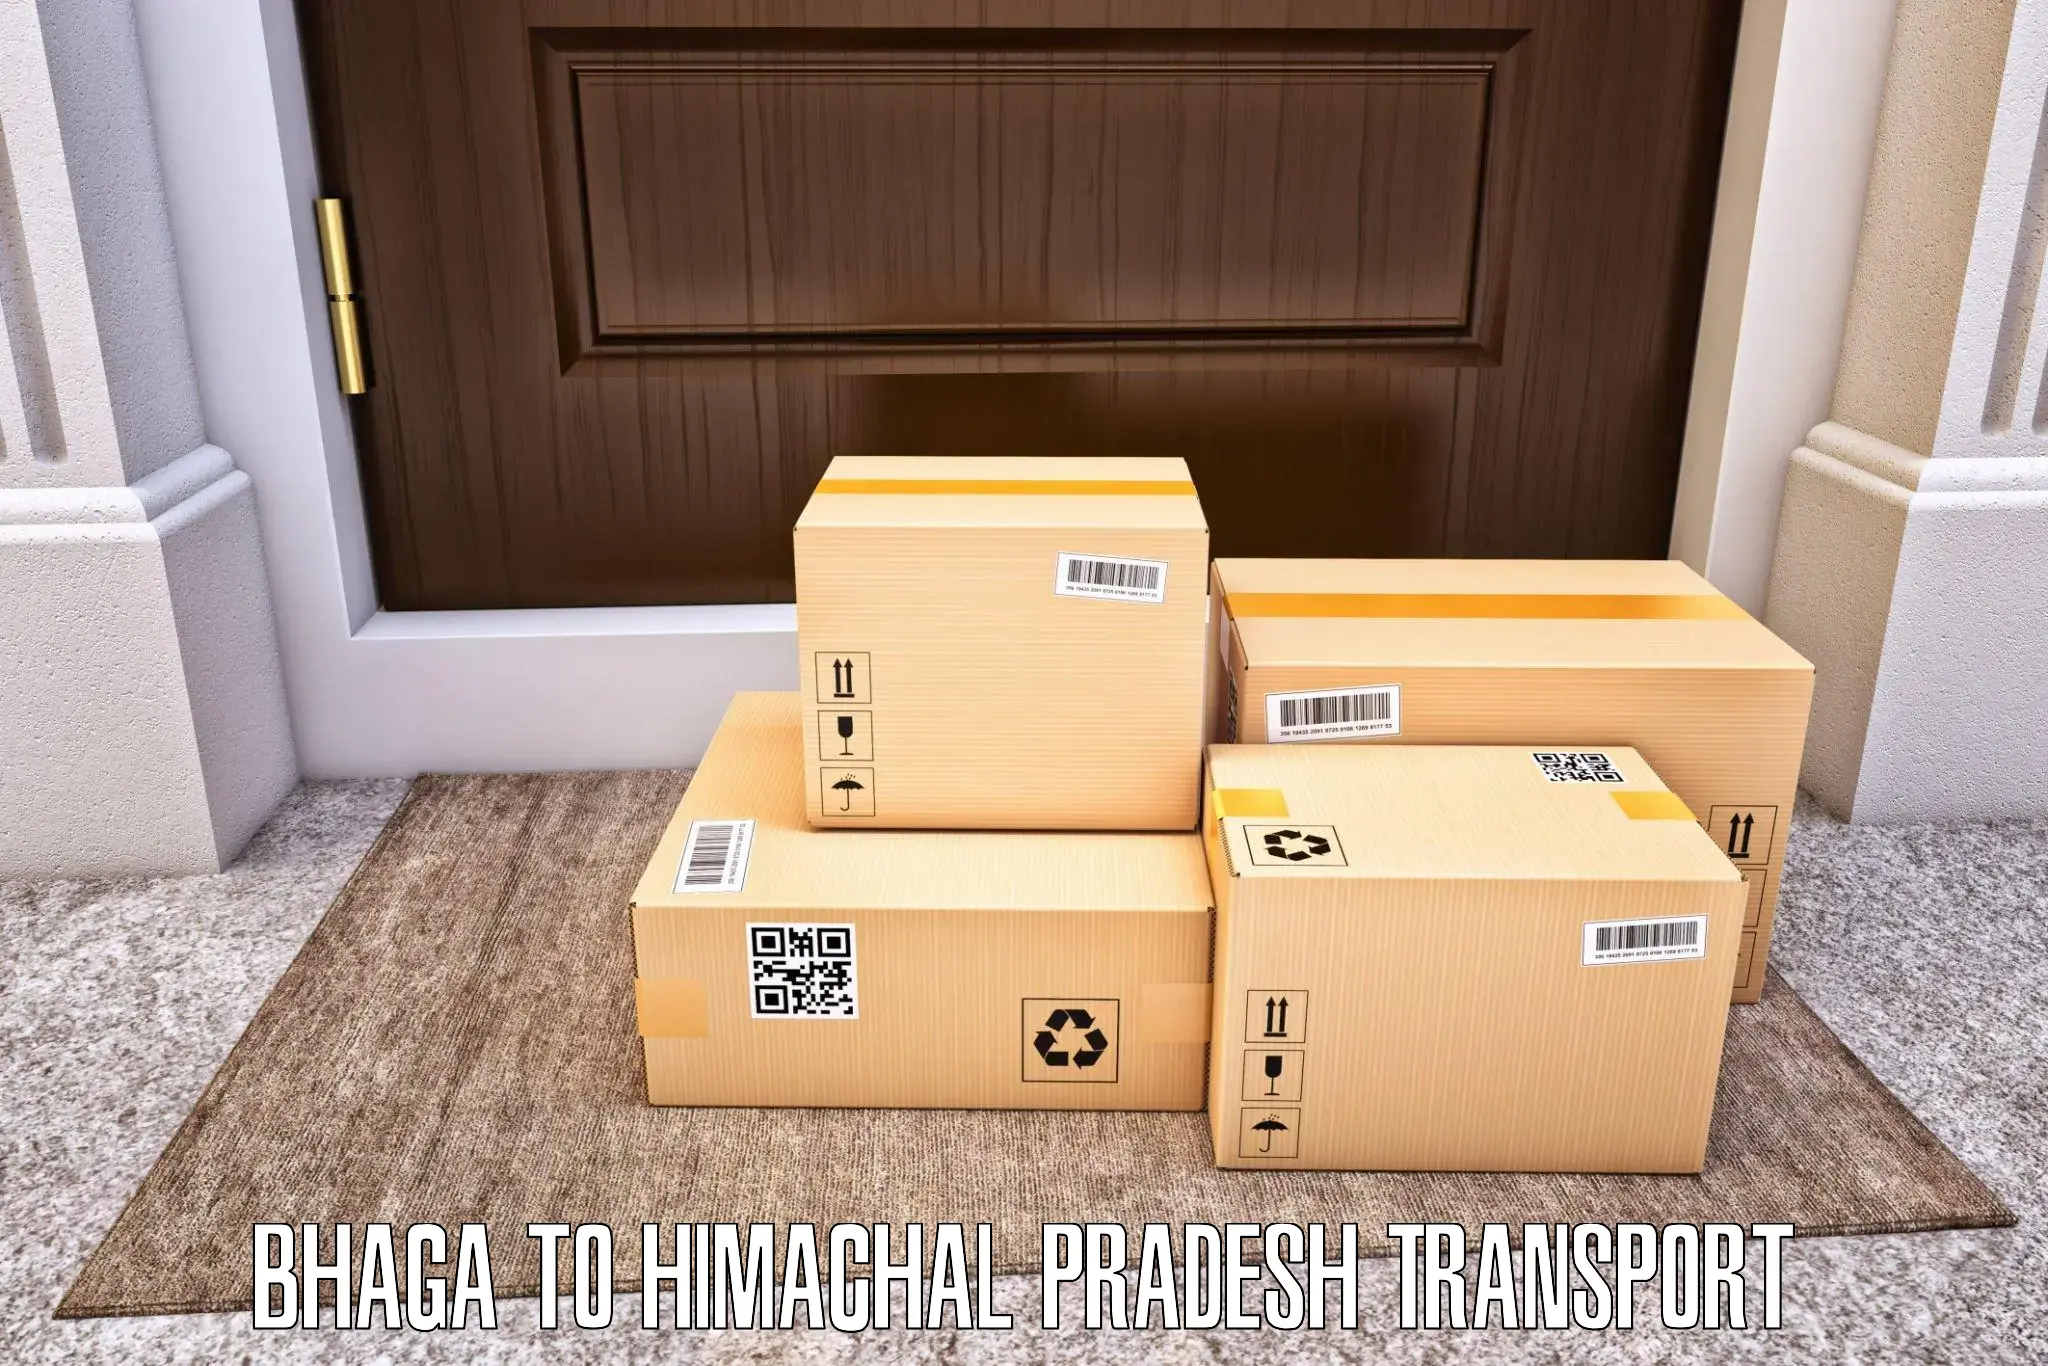 Luggage transport services Bhaga to Sundla